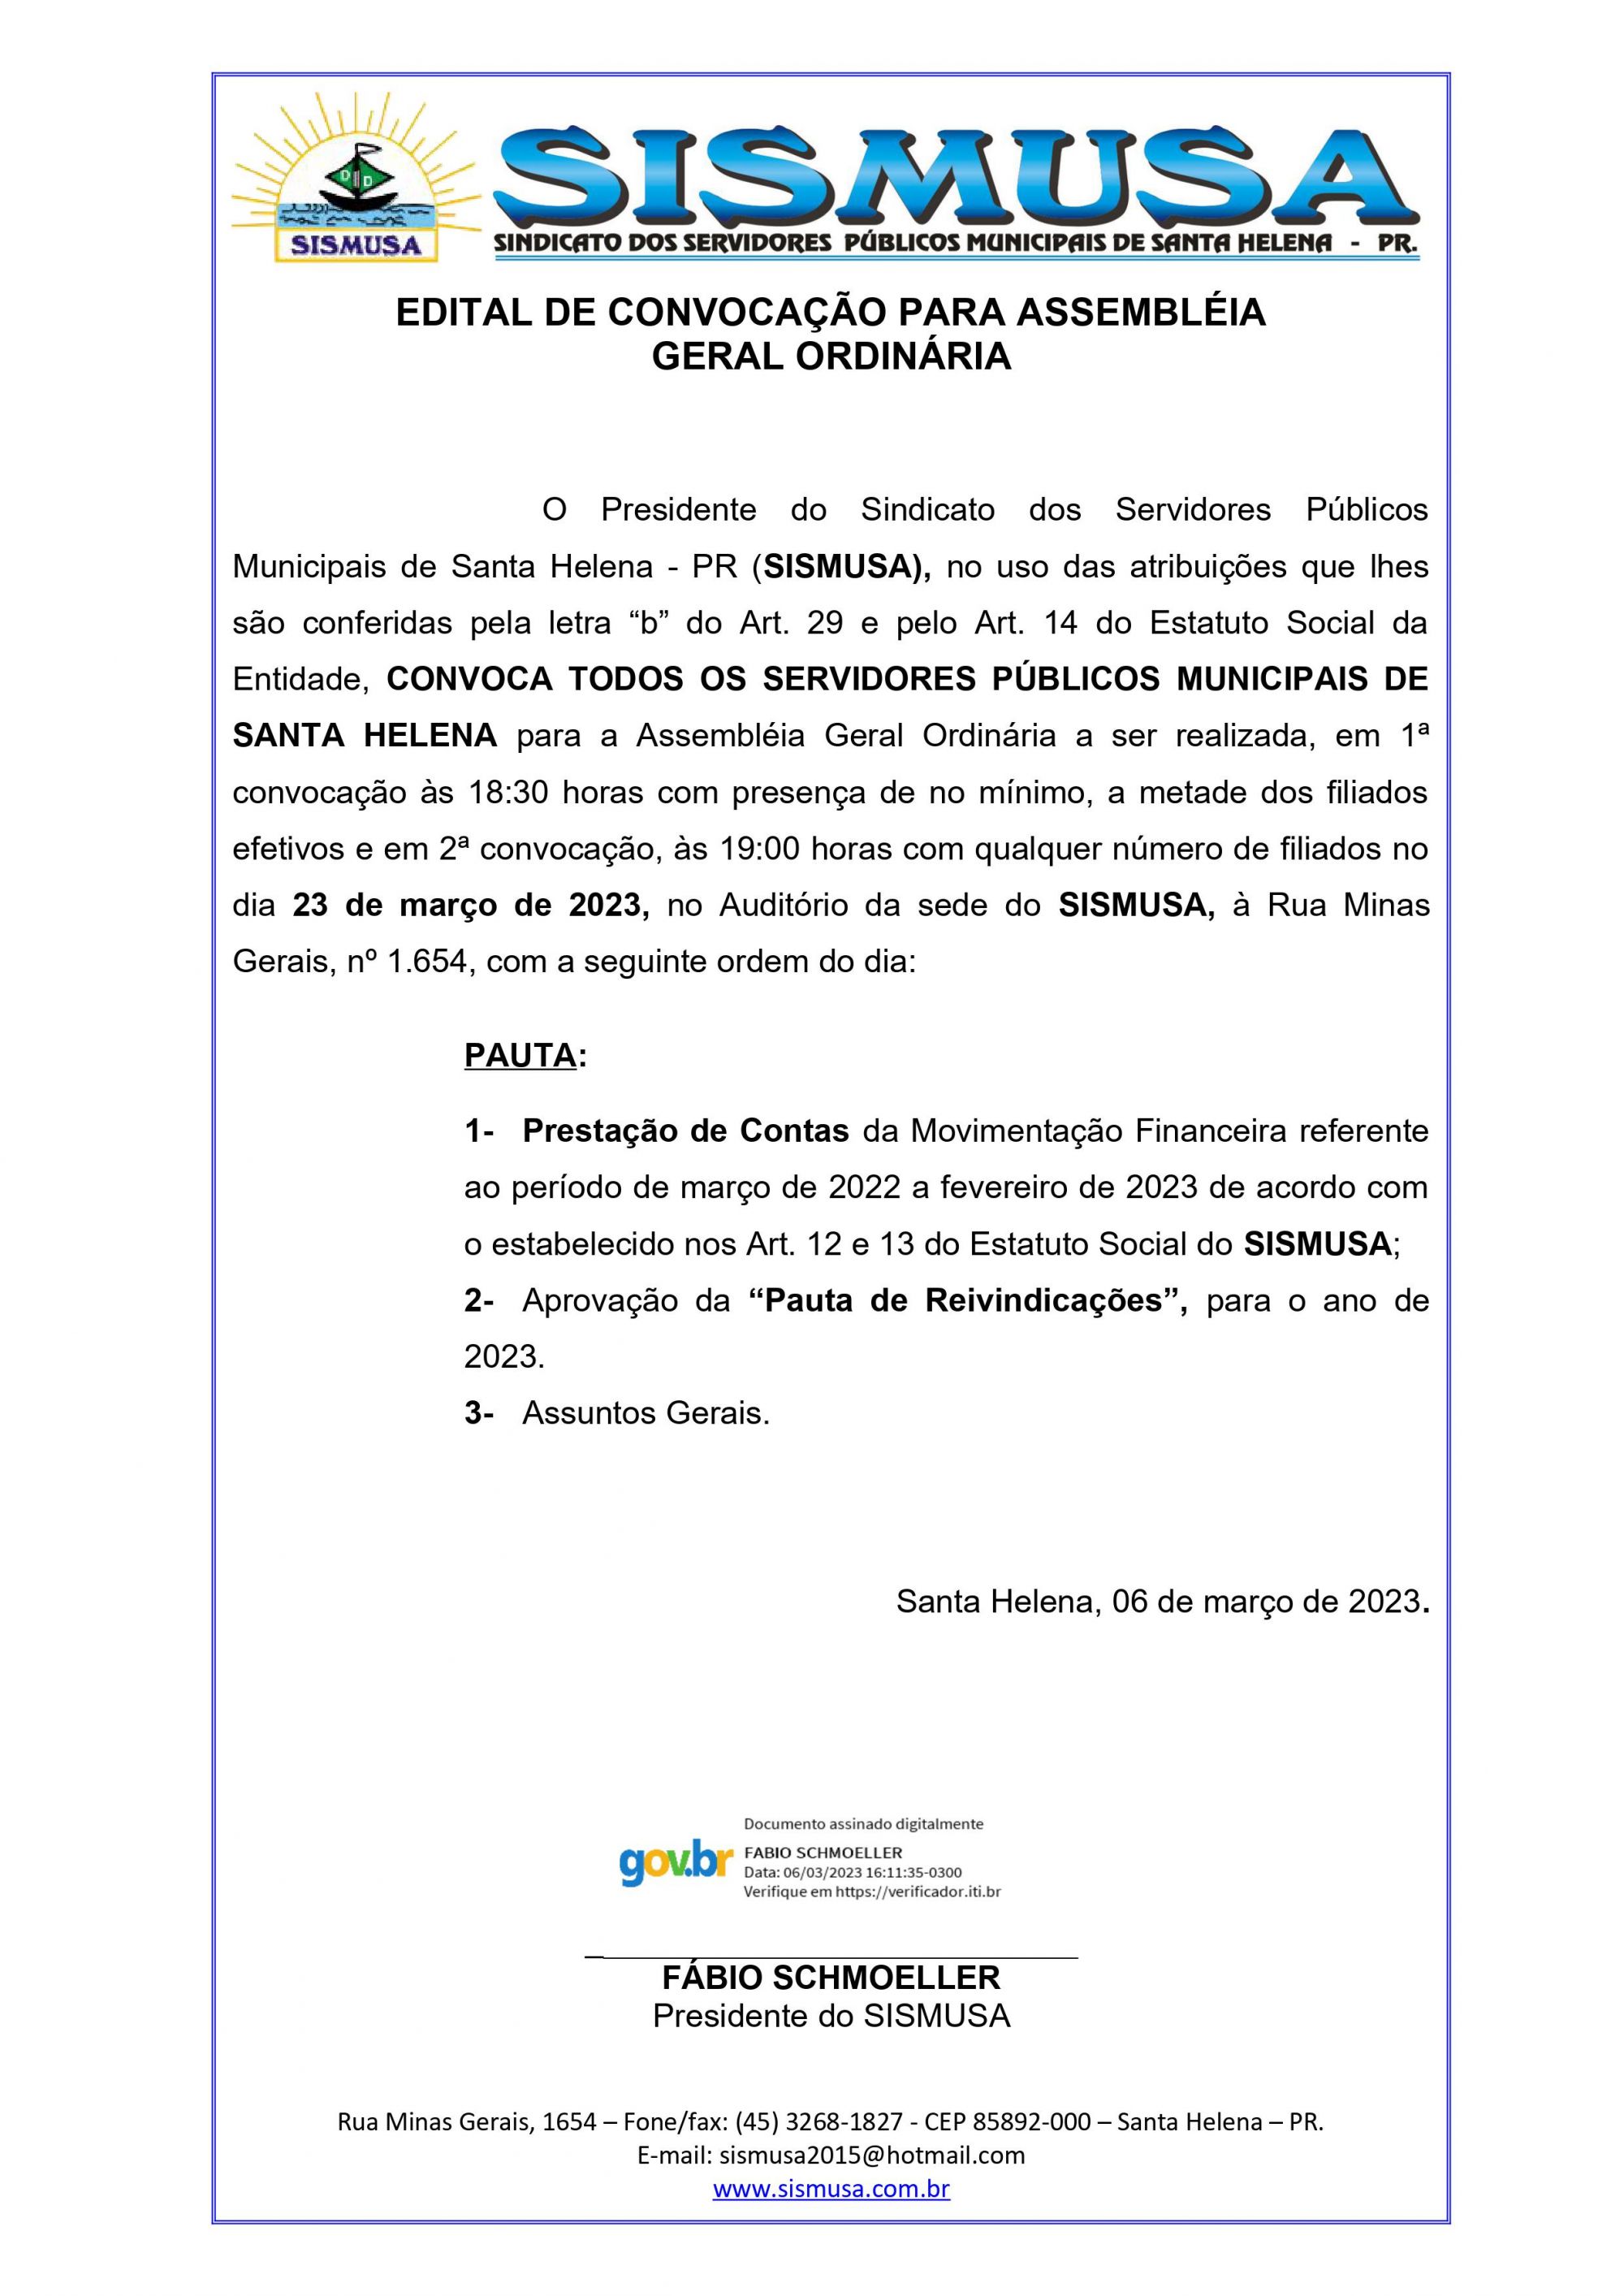 EDITAL-DE-CONVOCACAO-PARA-ASSEMBLEIA-2023.jpg